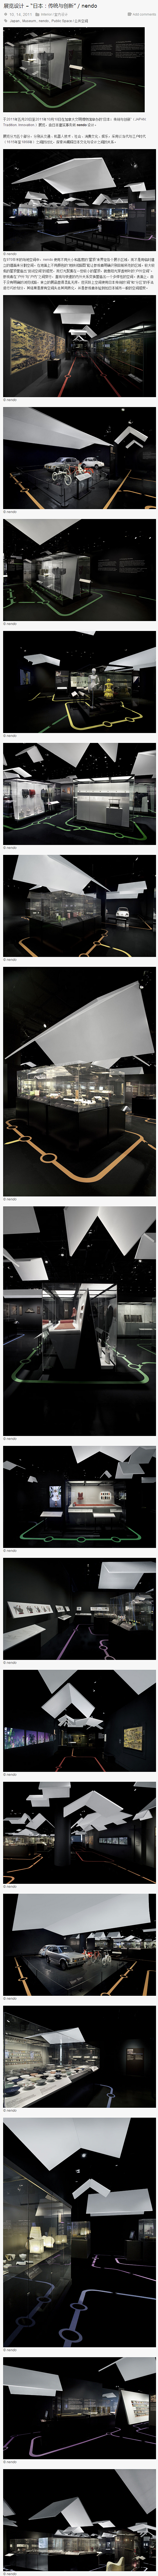 展览设计 – “日本：传统与创新” / ...